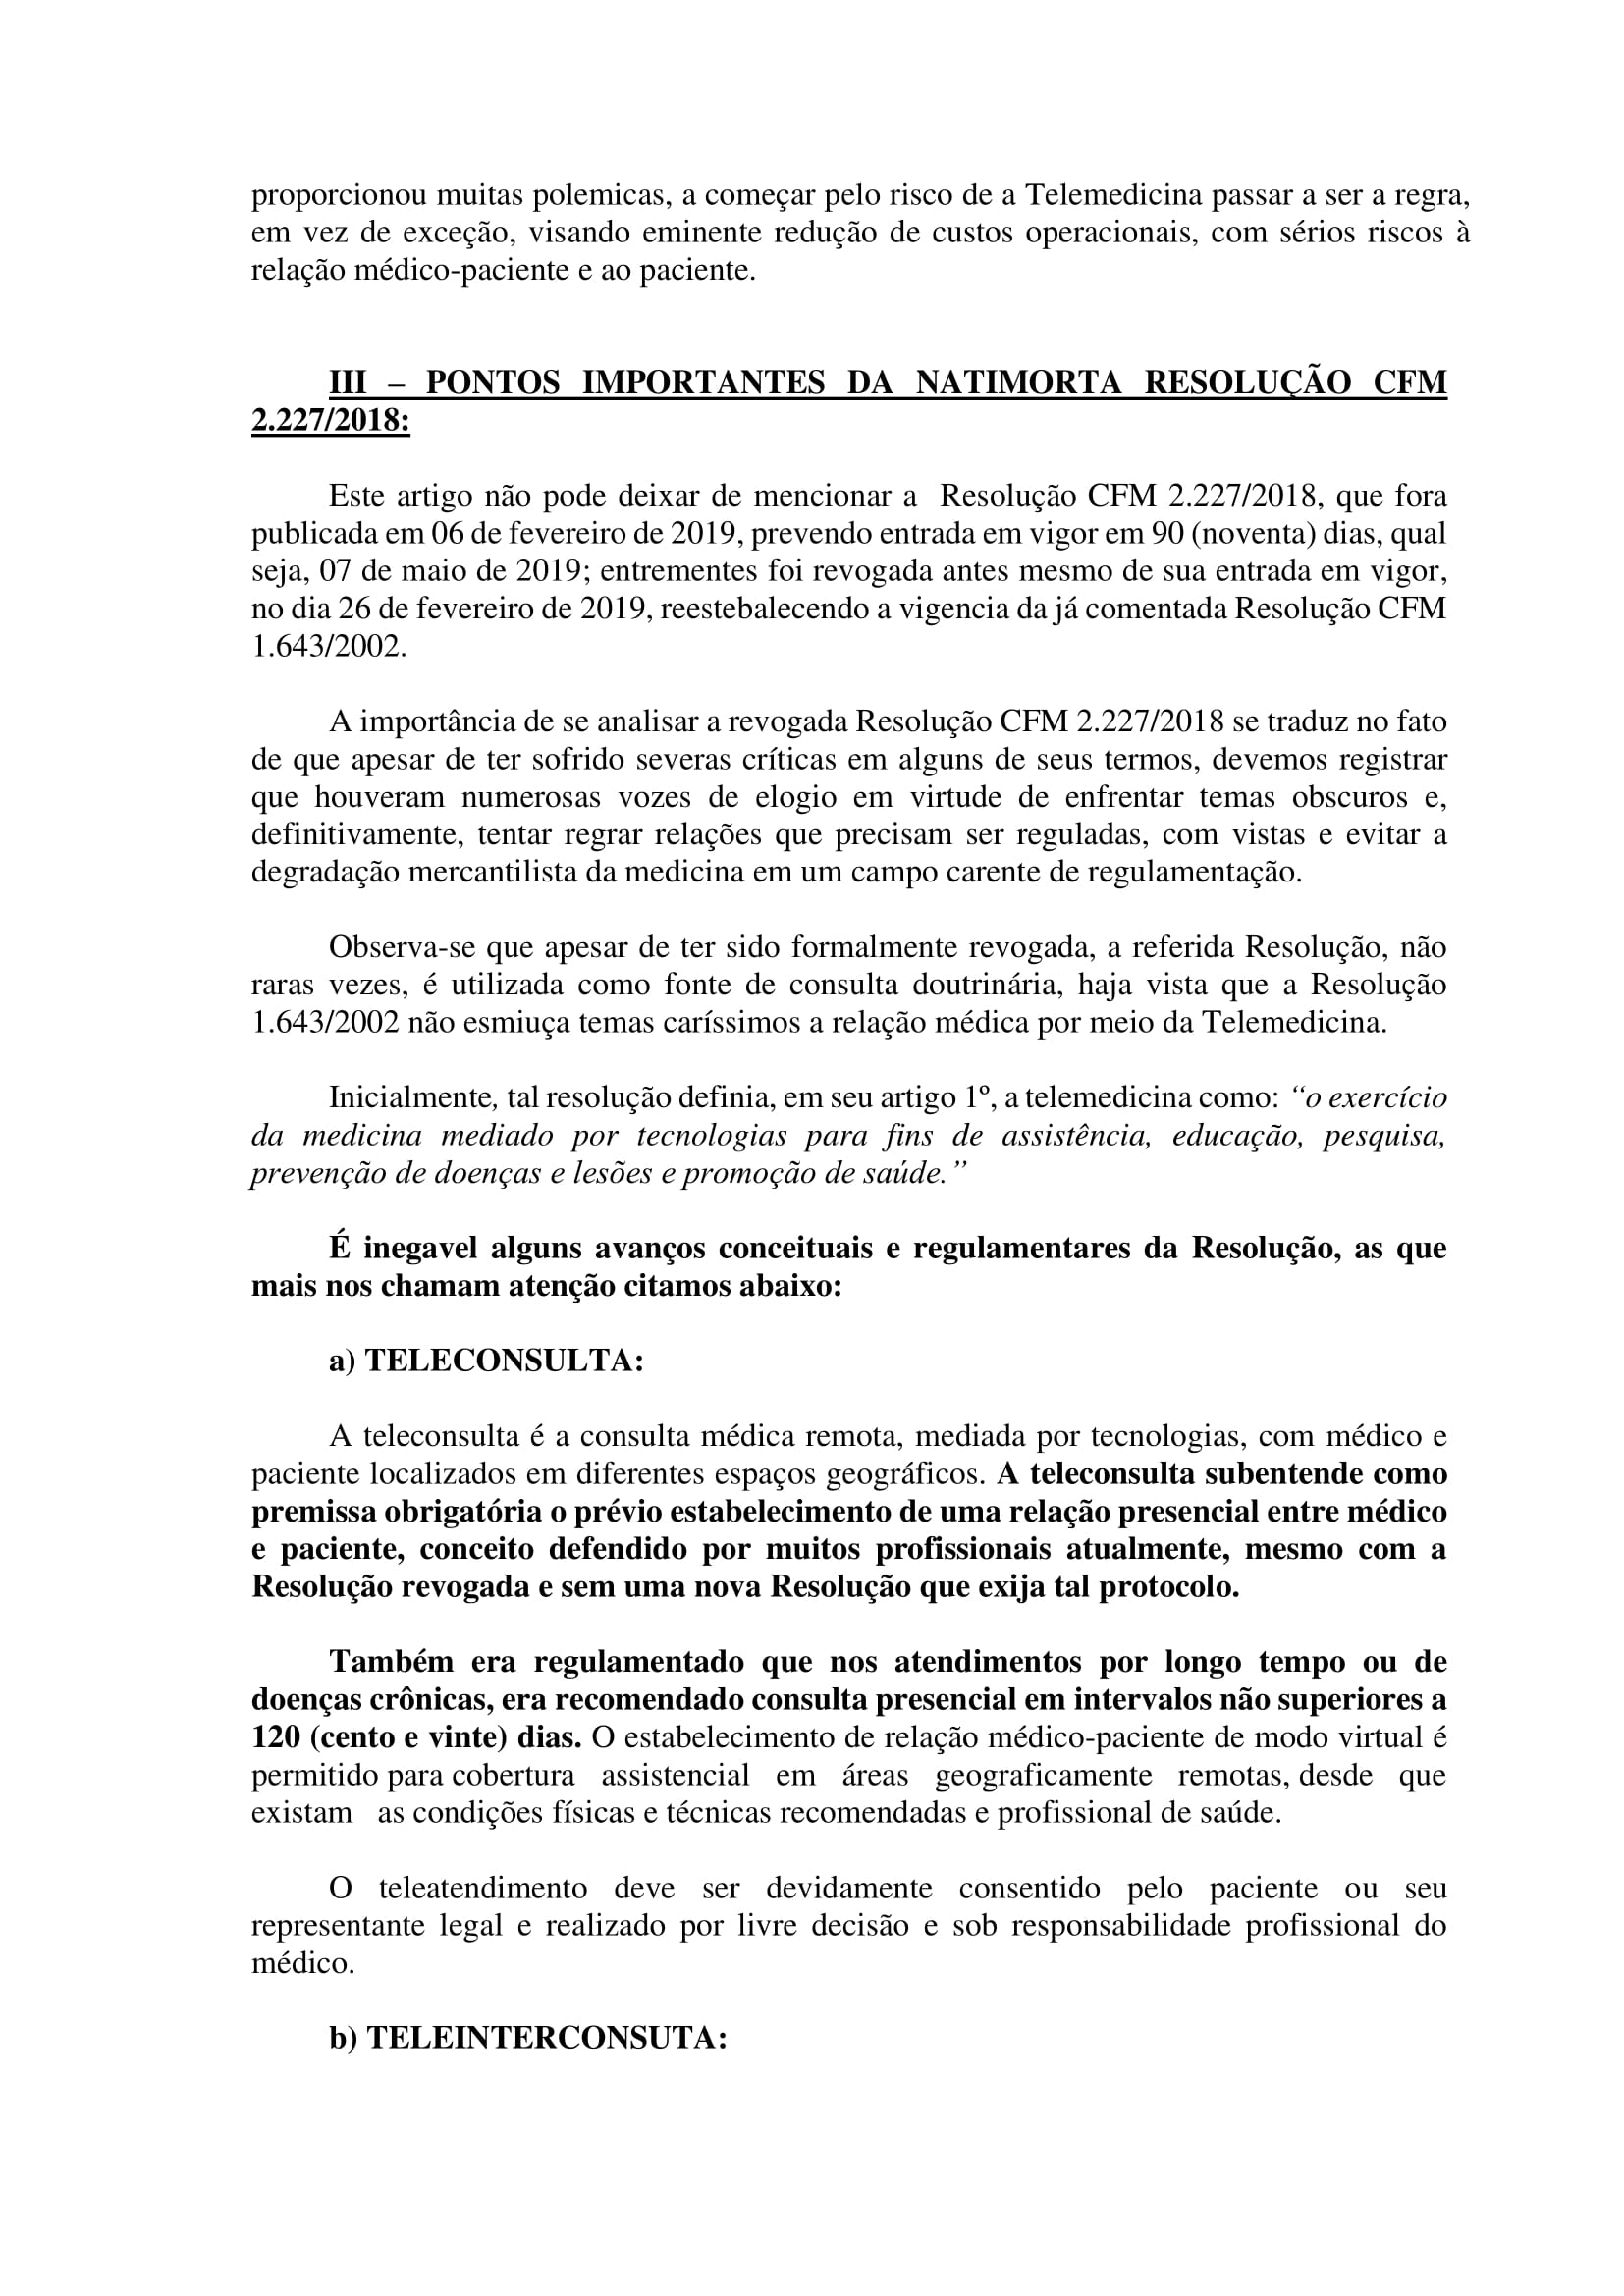 Artigo sobre Telemedicina e suas implicações regulatórias - Tiago Torres-05